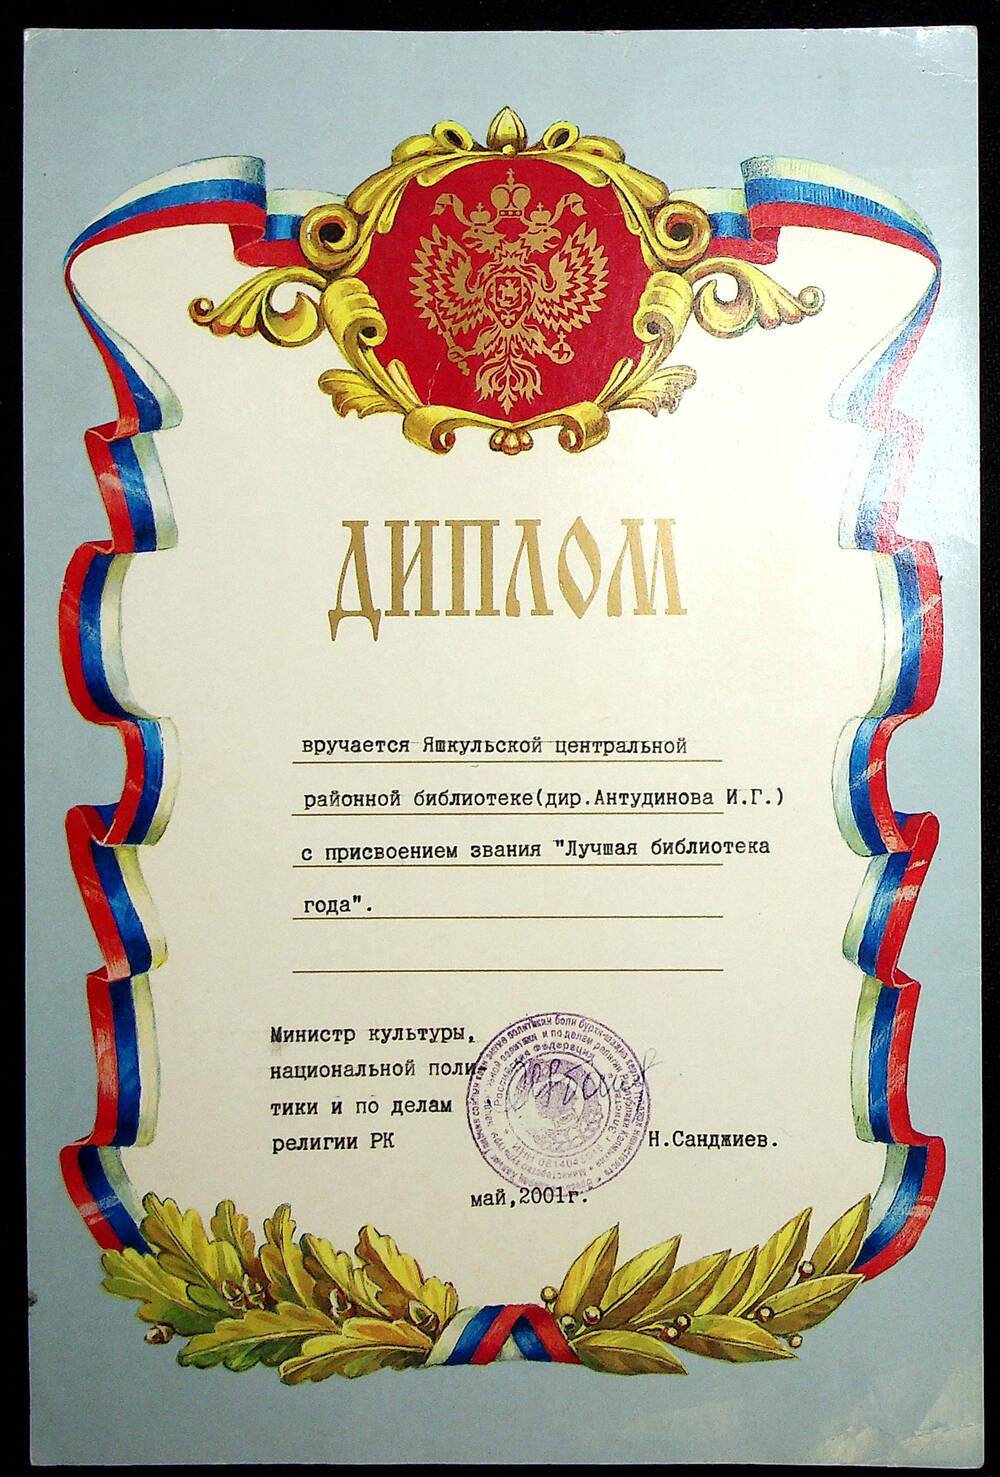 Диплом Яшкульской центральной районной библиотеке о присвоении звания Лучшая библиотека года, 2001 г.